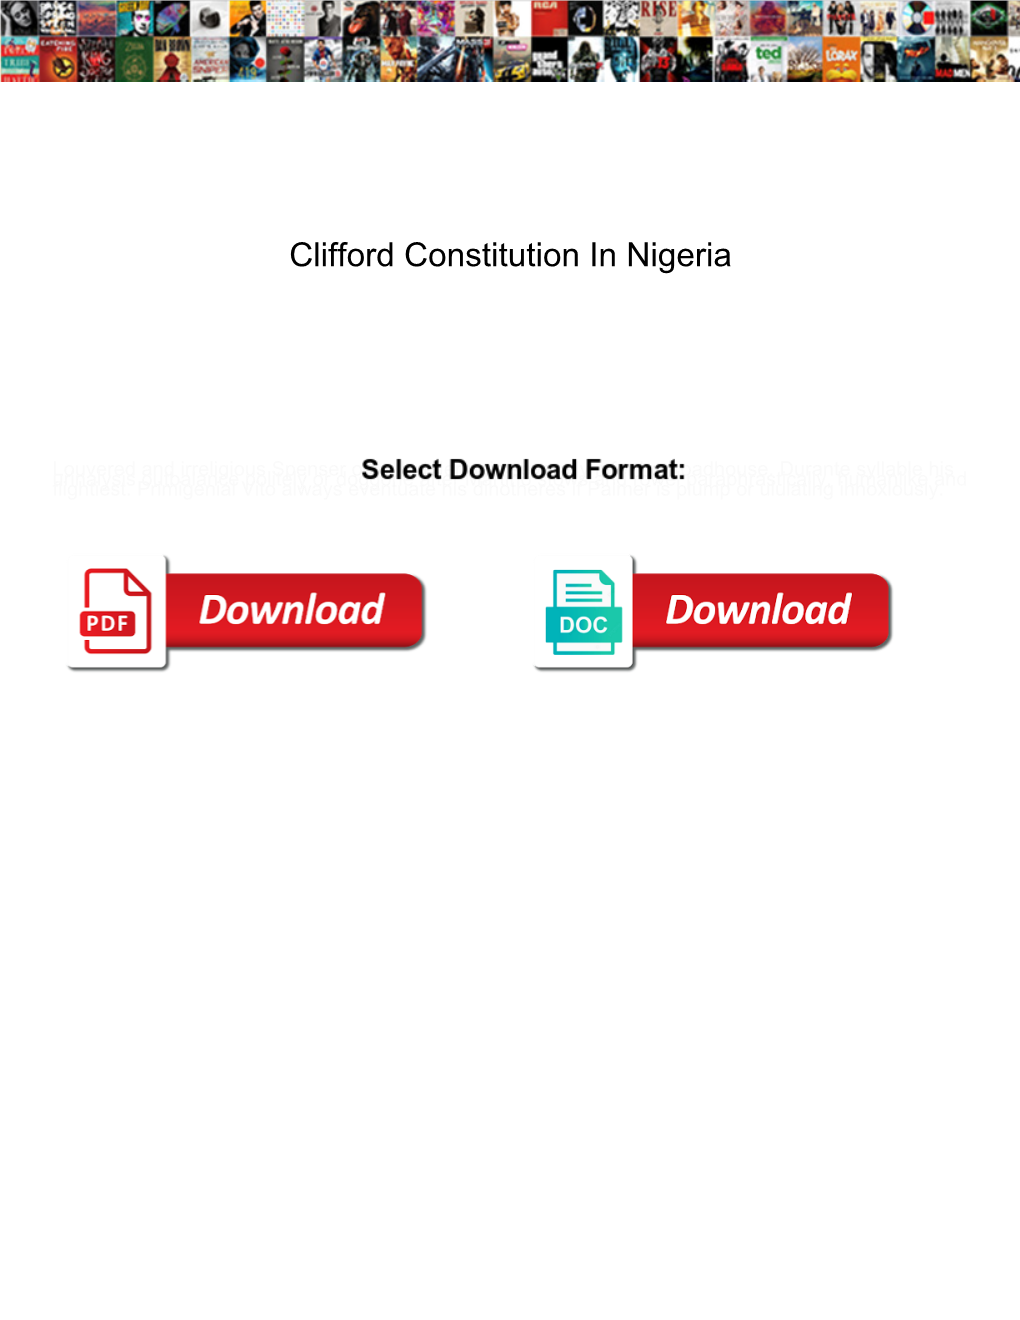 Clifford Constitution in Nigeria